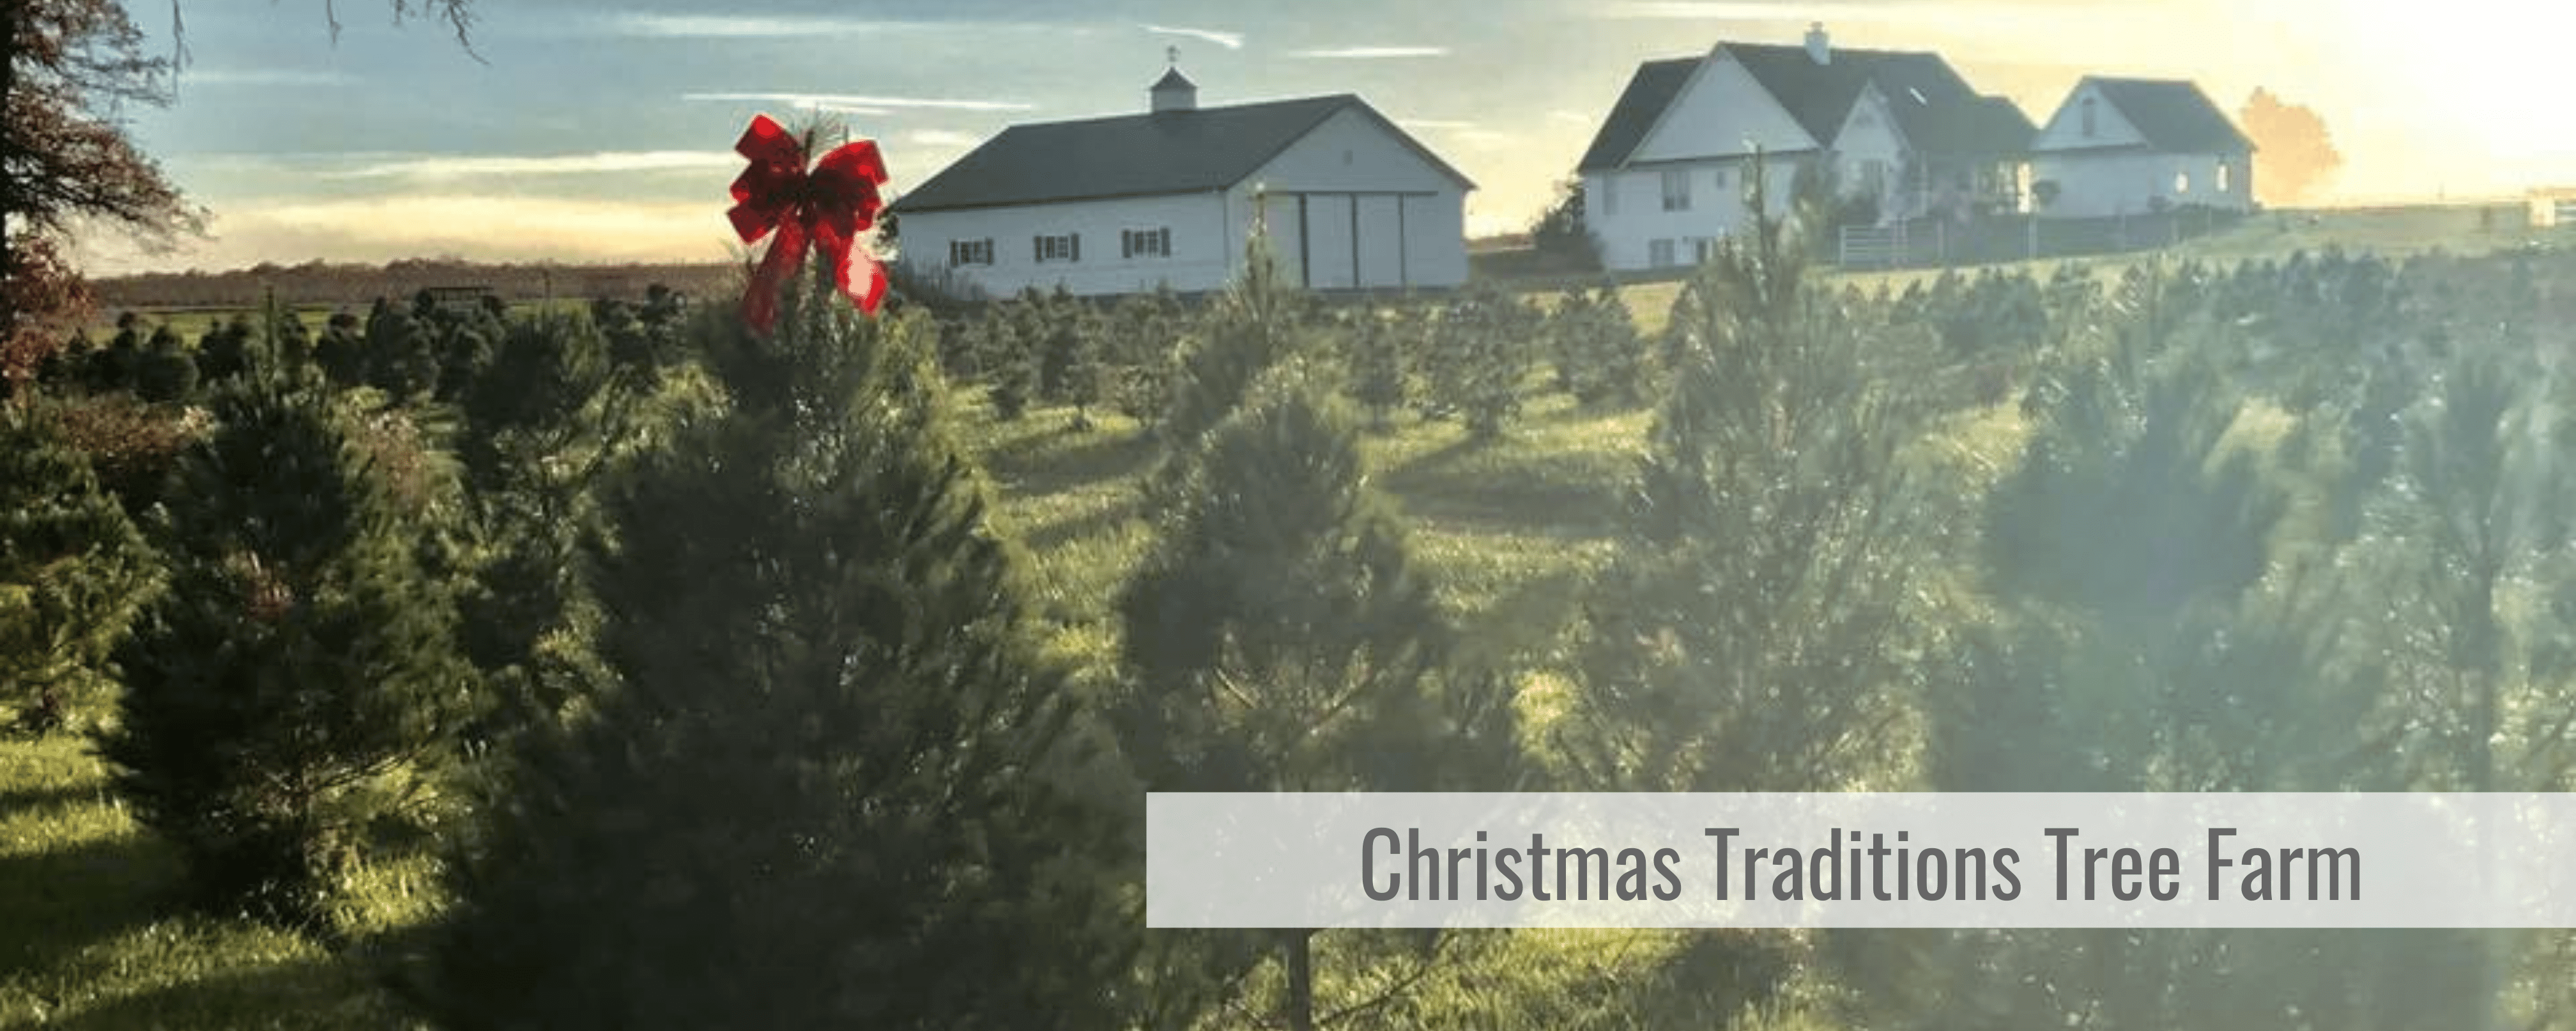 Christmas Traditions Tree Farm